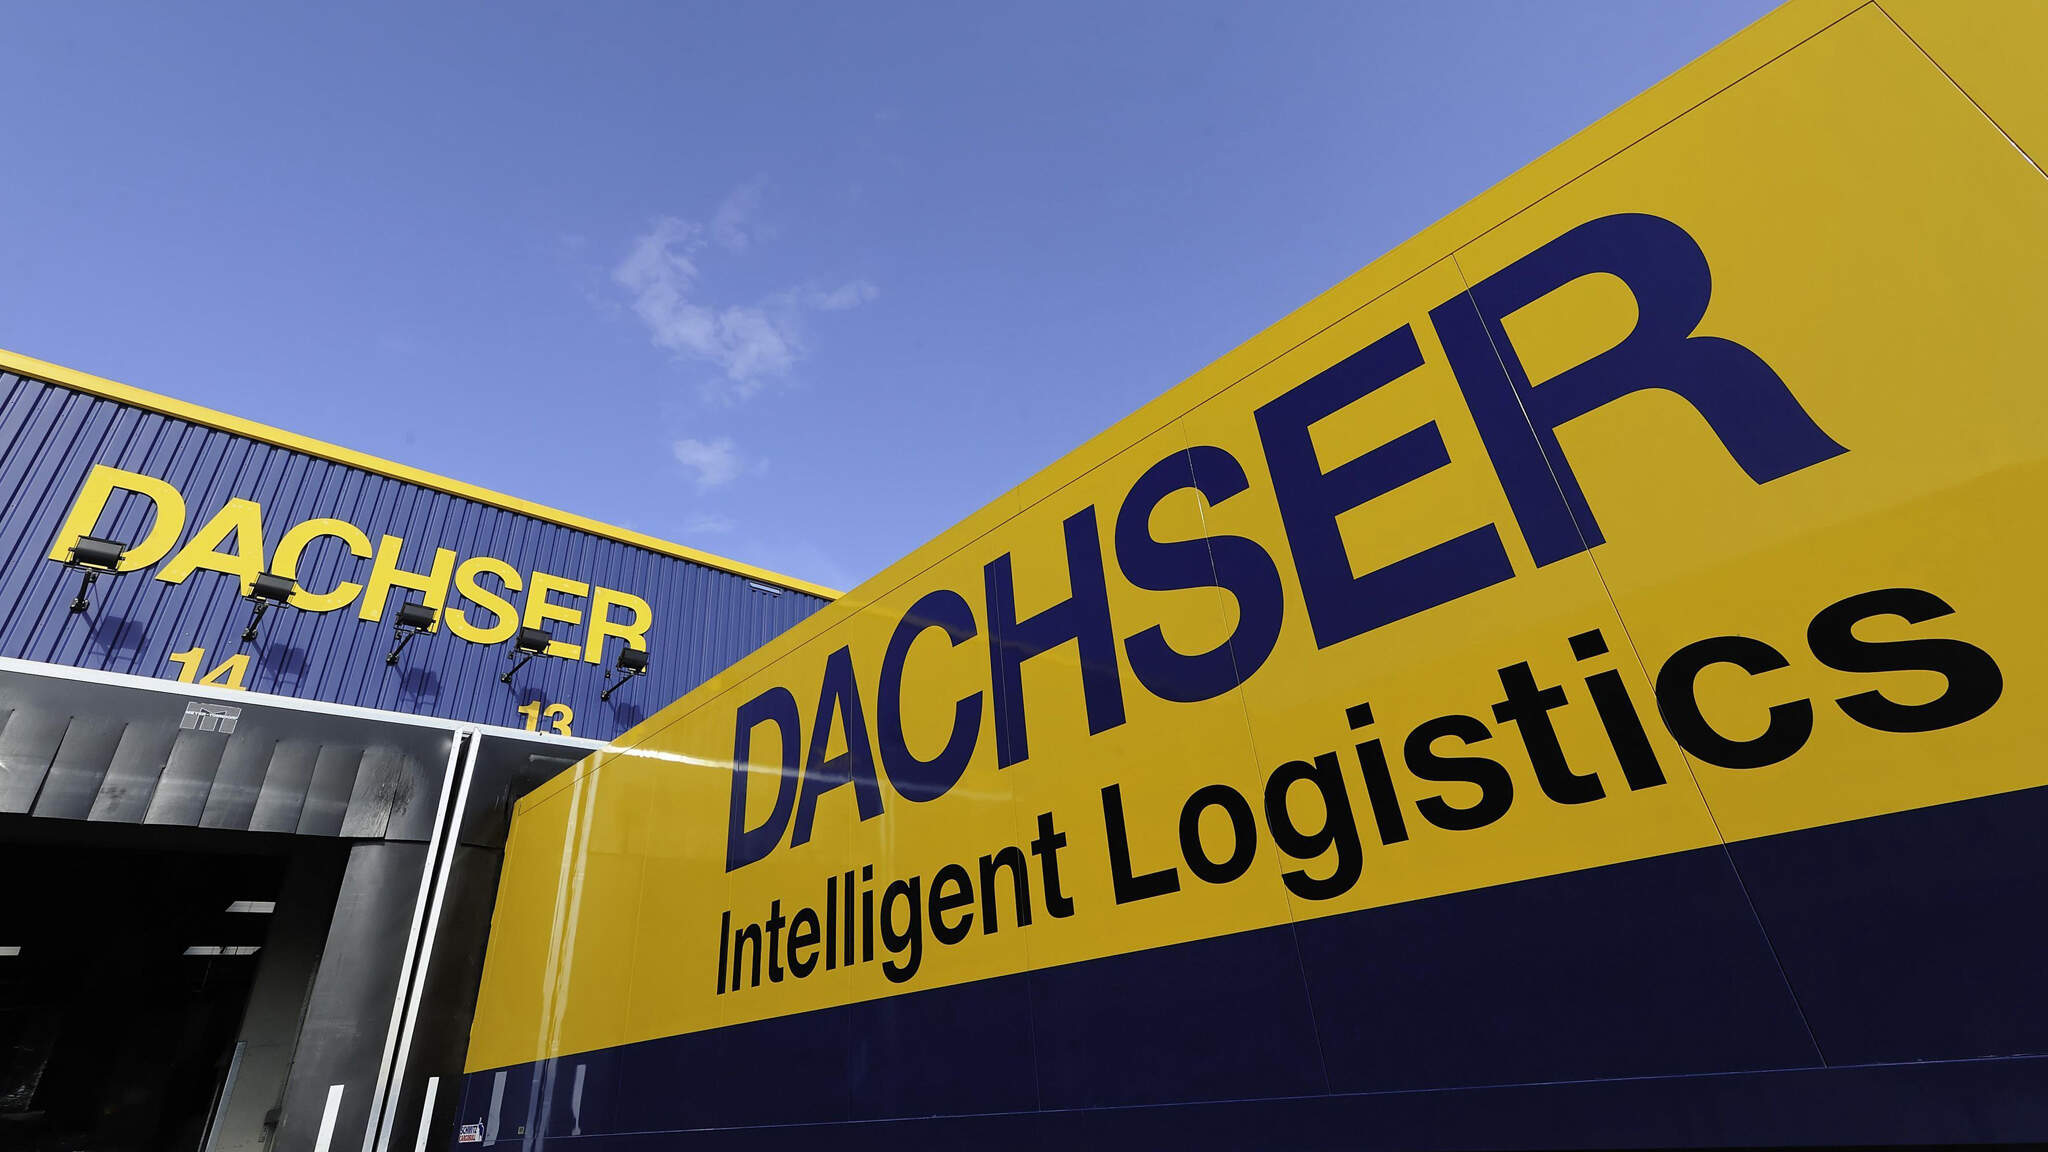 DACHSER European Logistics